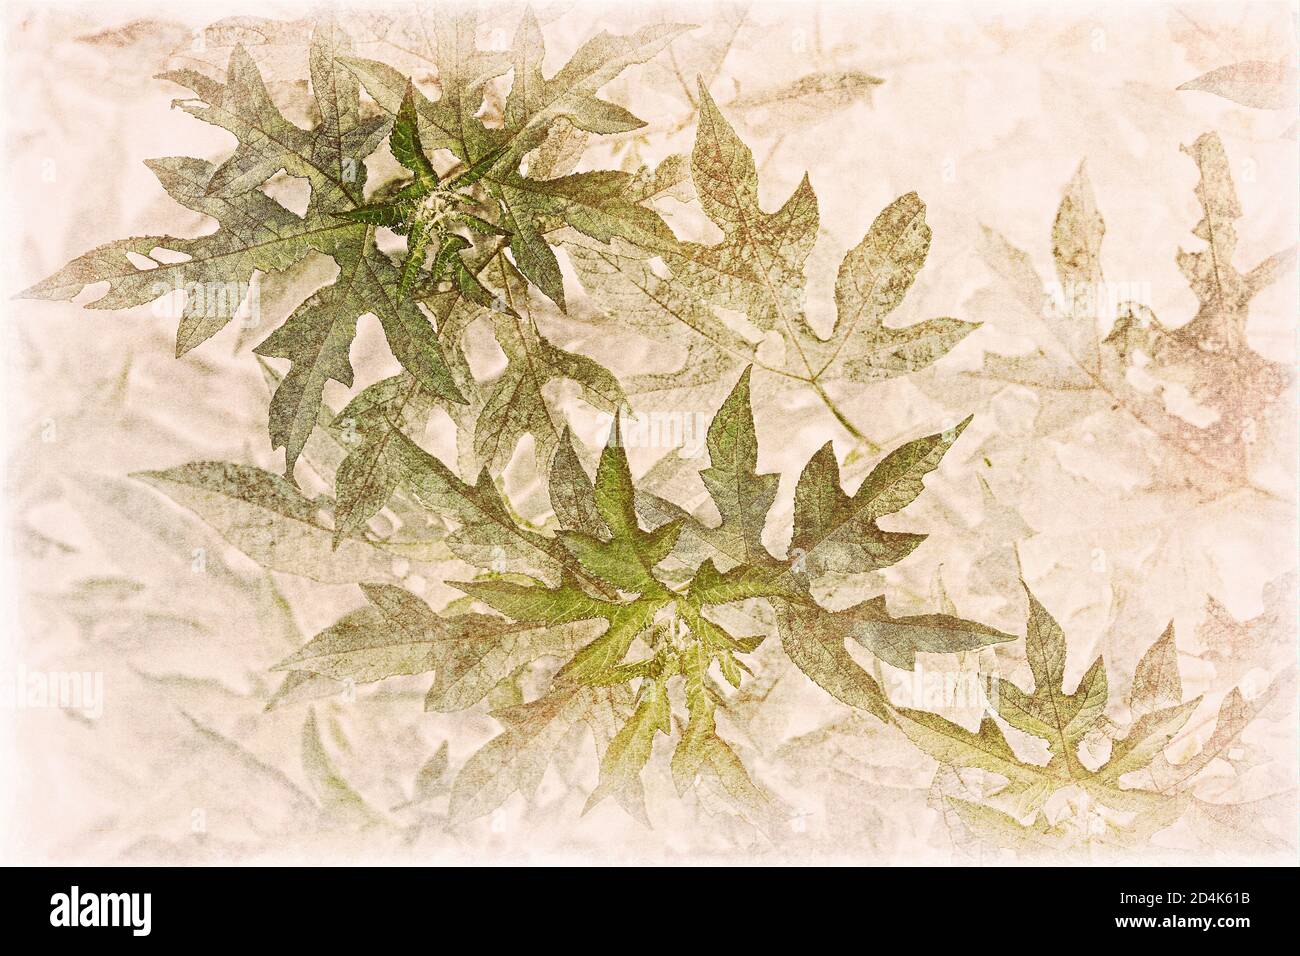 Einheimische Vegetation am Straßenrand von Texas mit einem Vintage- oder Antikgefühl, da sie von leuchtendem Grün in fast transparente Sepia-Töne verblassen. Stockfoto